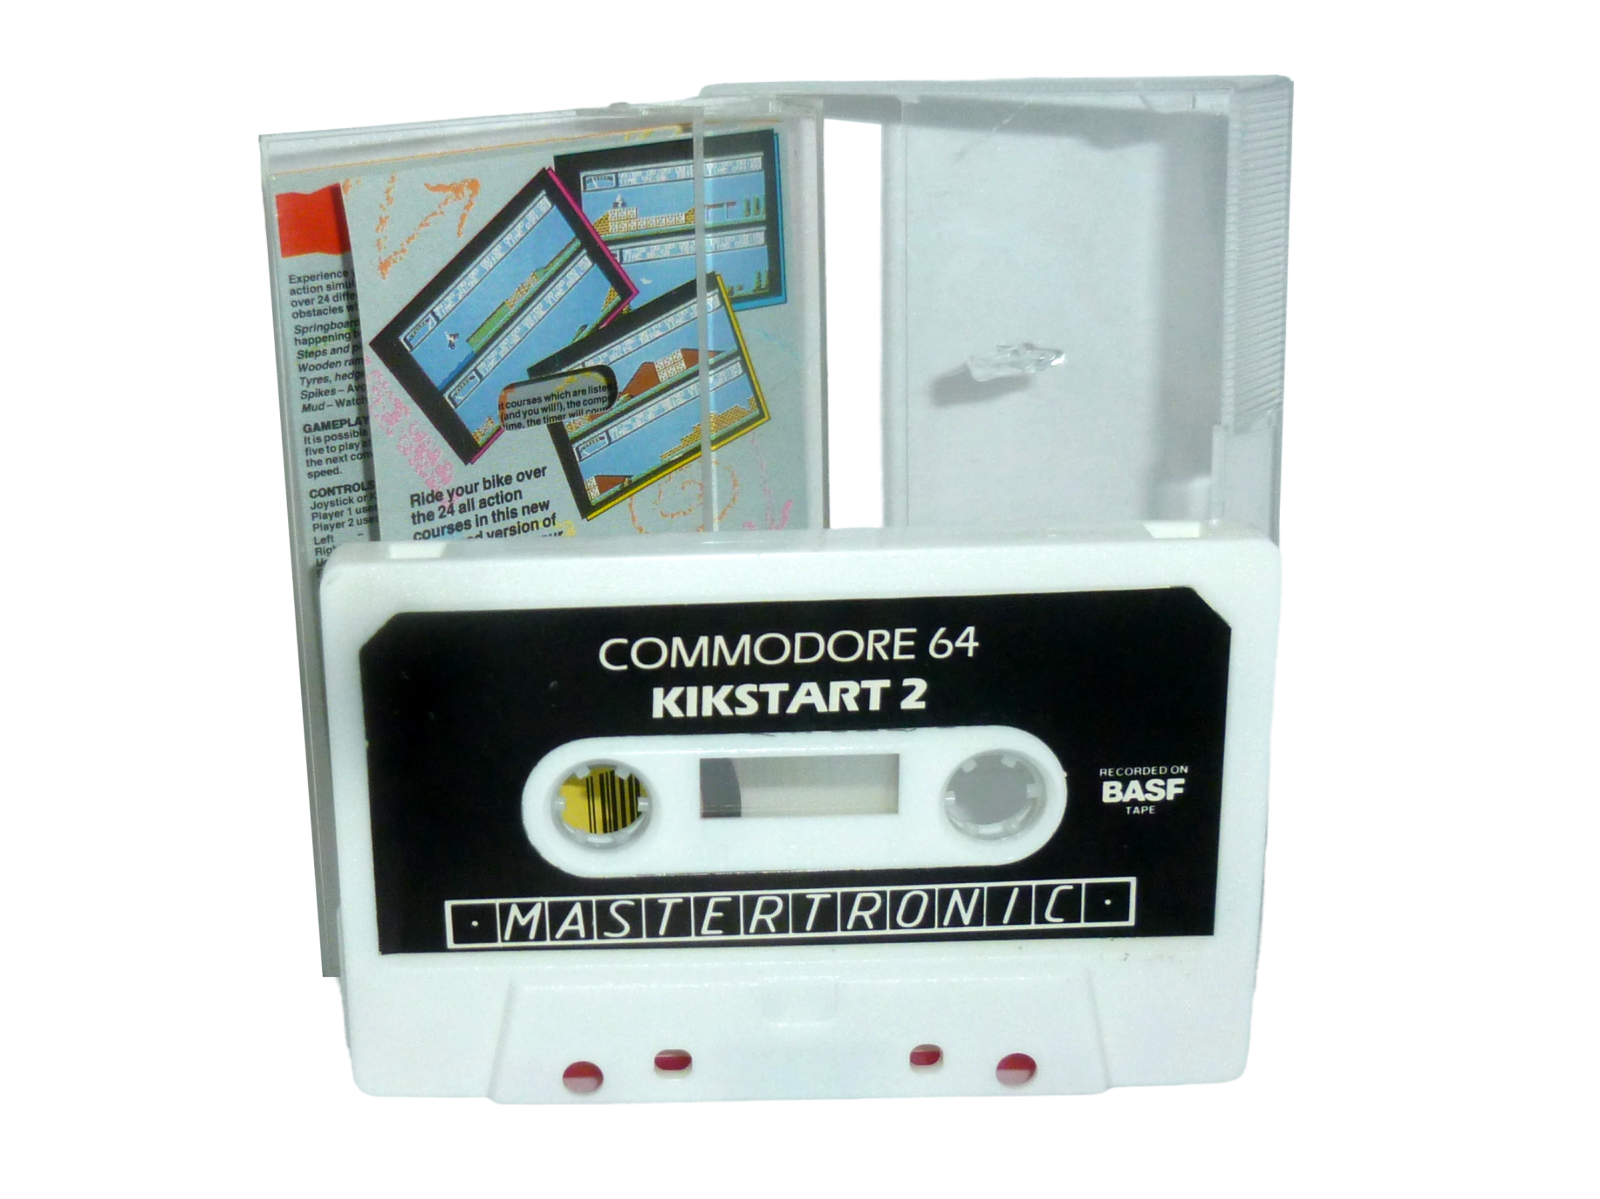 Kikstart 2 - Cassette / Datasette Mastertronic 1987 2